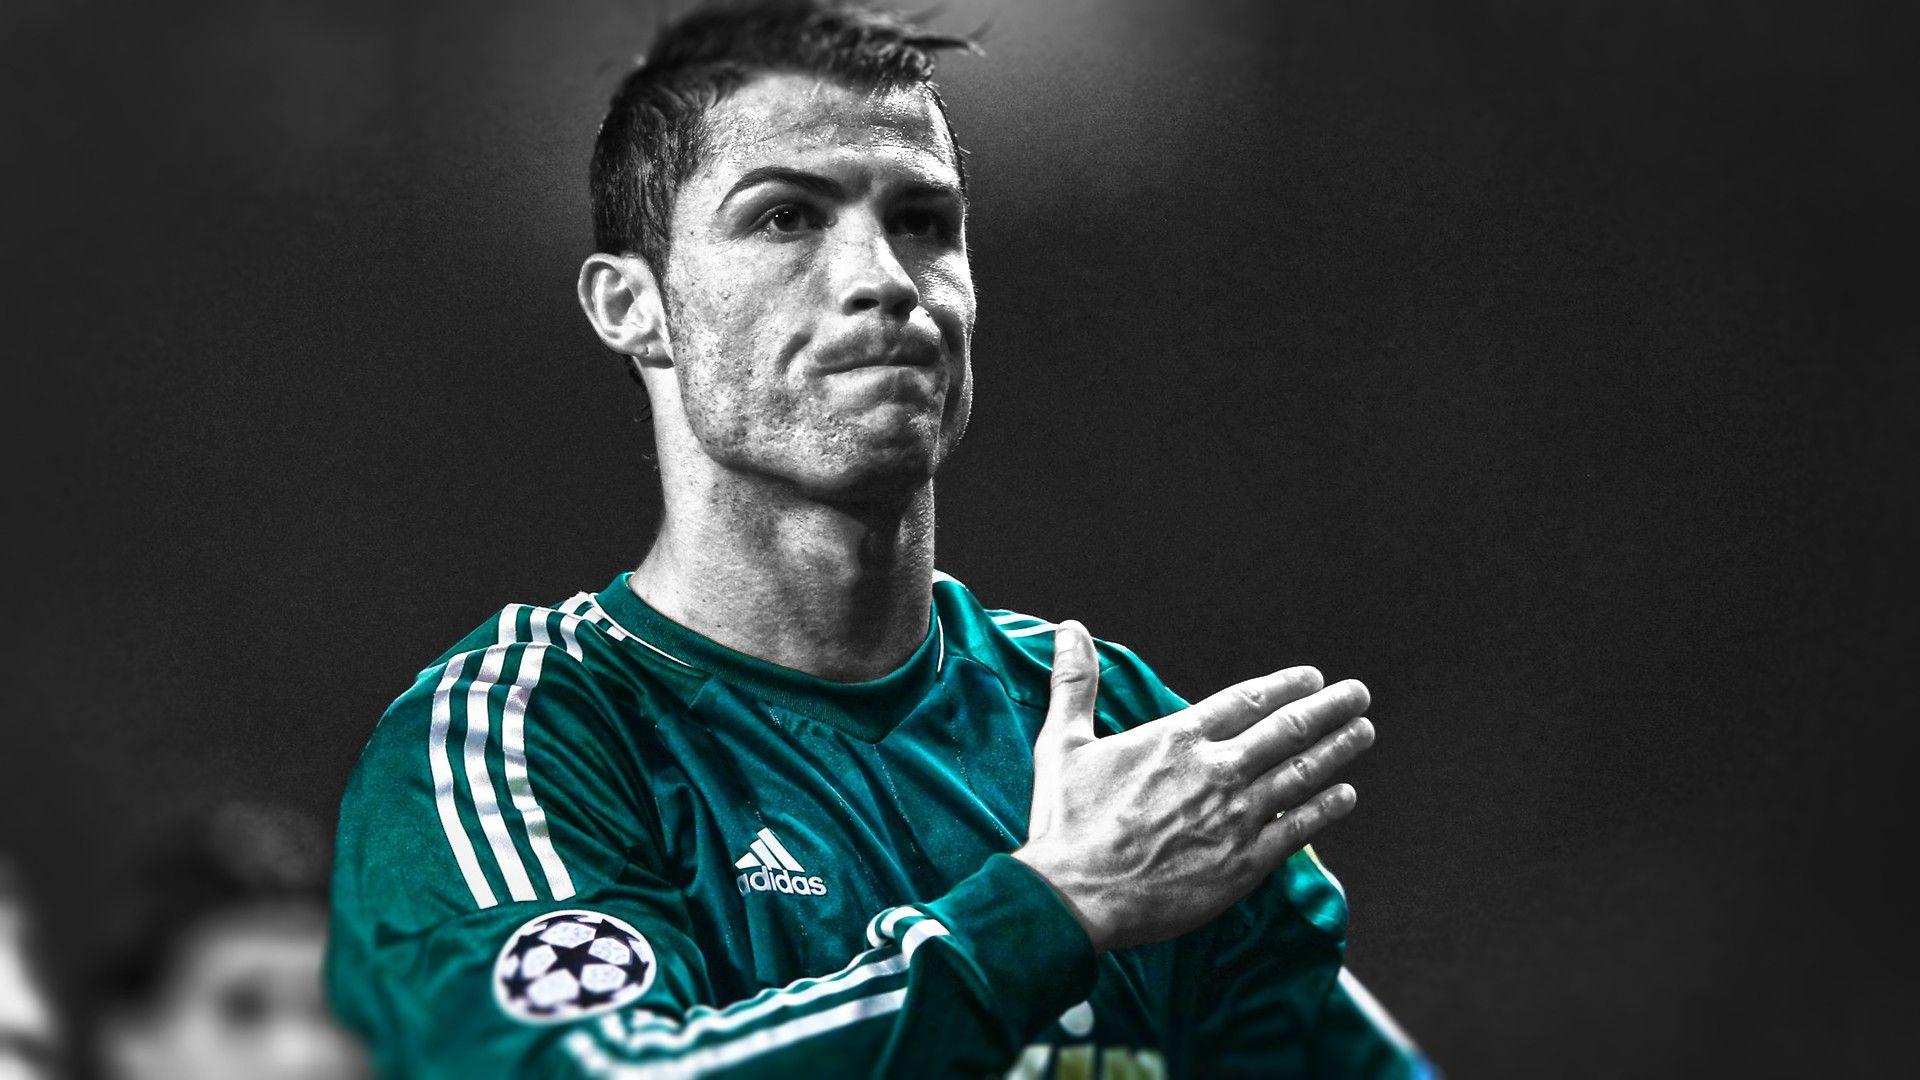 Cristiano Ronaldo HD Wallpaper 2018. Best Of CR7